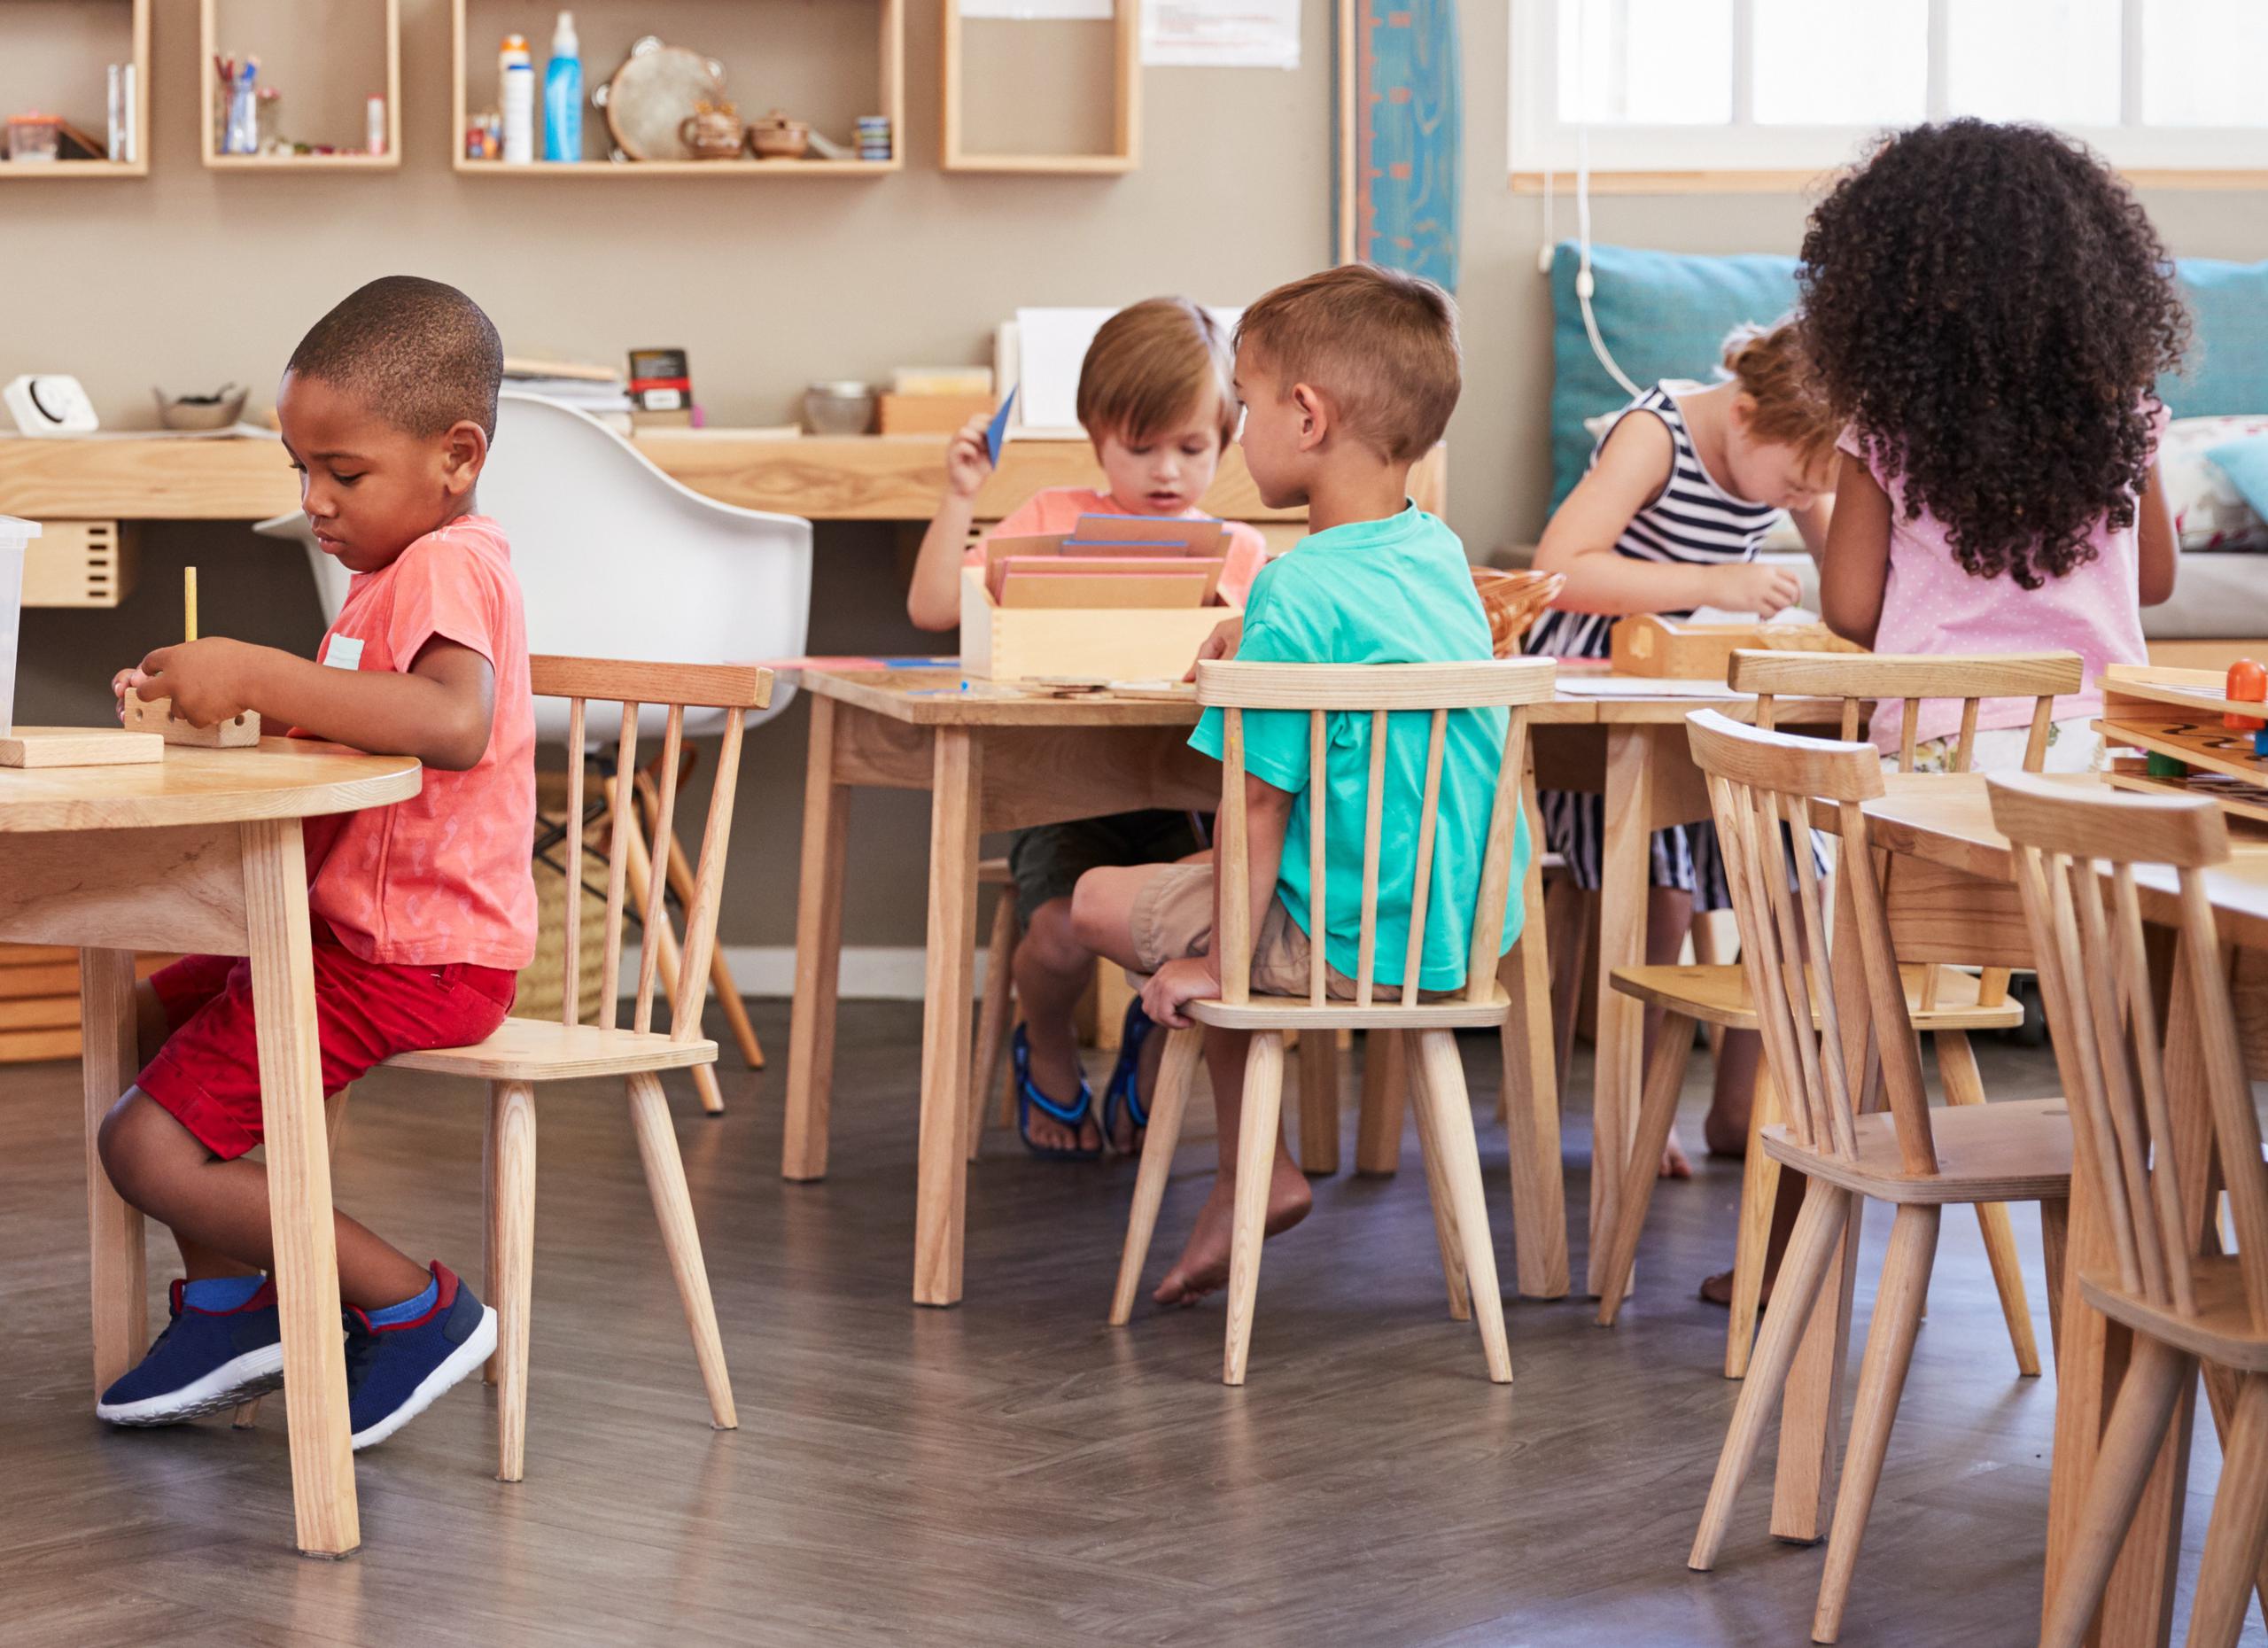 La metodología Montessori promueve la libertad del niño a través de un ambiente ordenado que le permita desarrollar sus capacidades de manera individual, respetando su autonomía y sus tiempos.